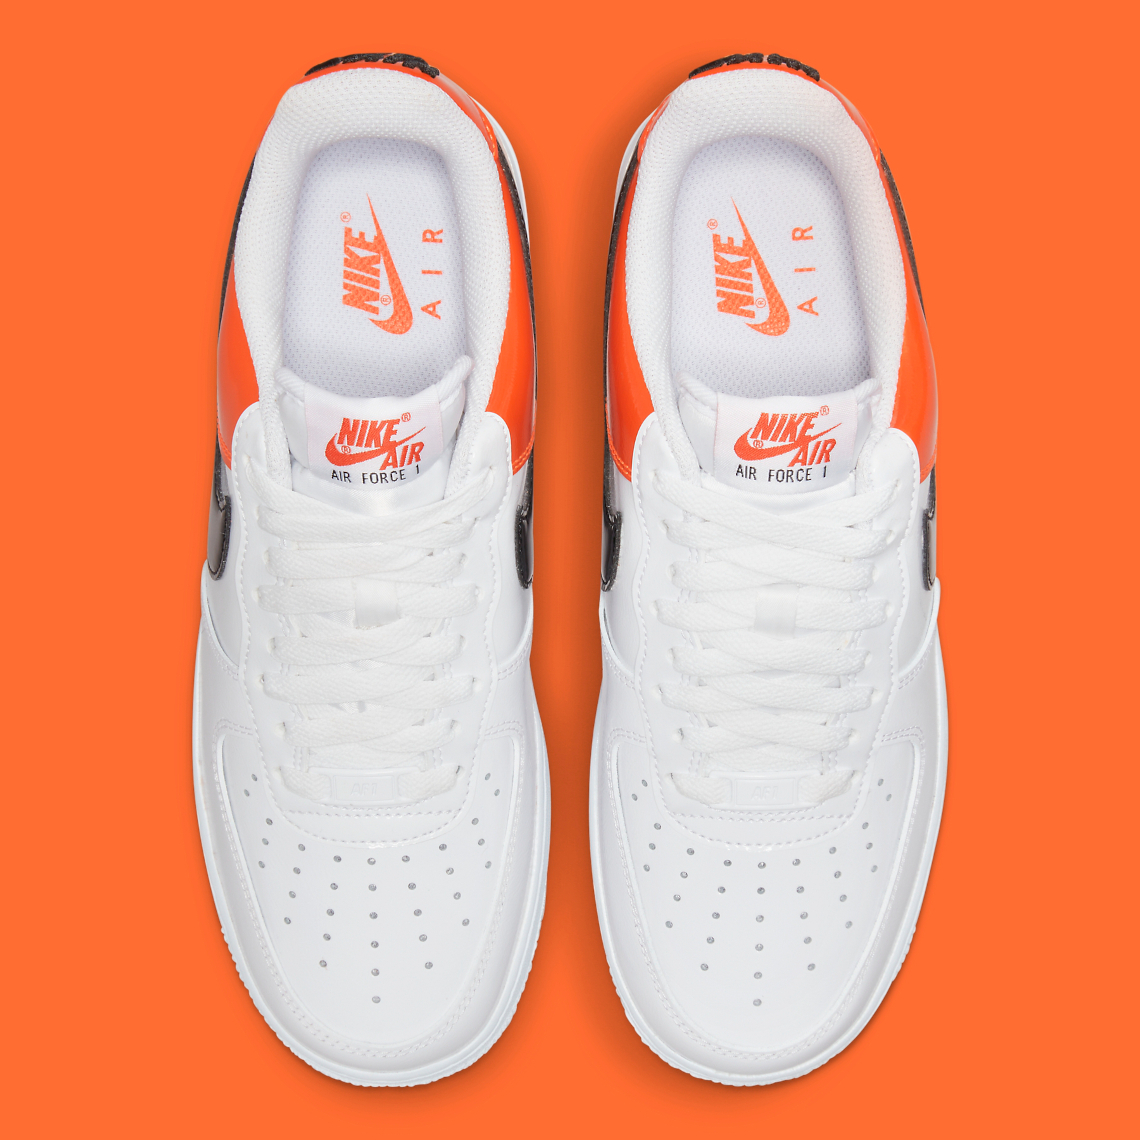 Nike Air Force 1 Low White/Patent Orange DJ9942-103